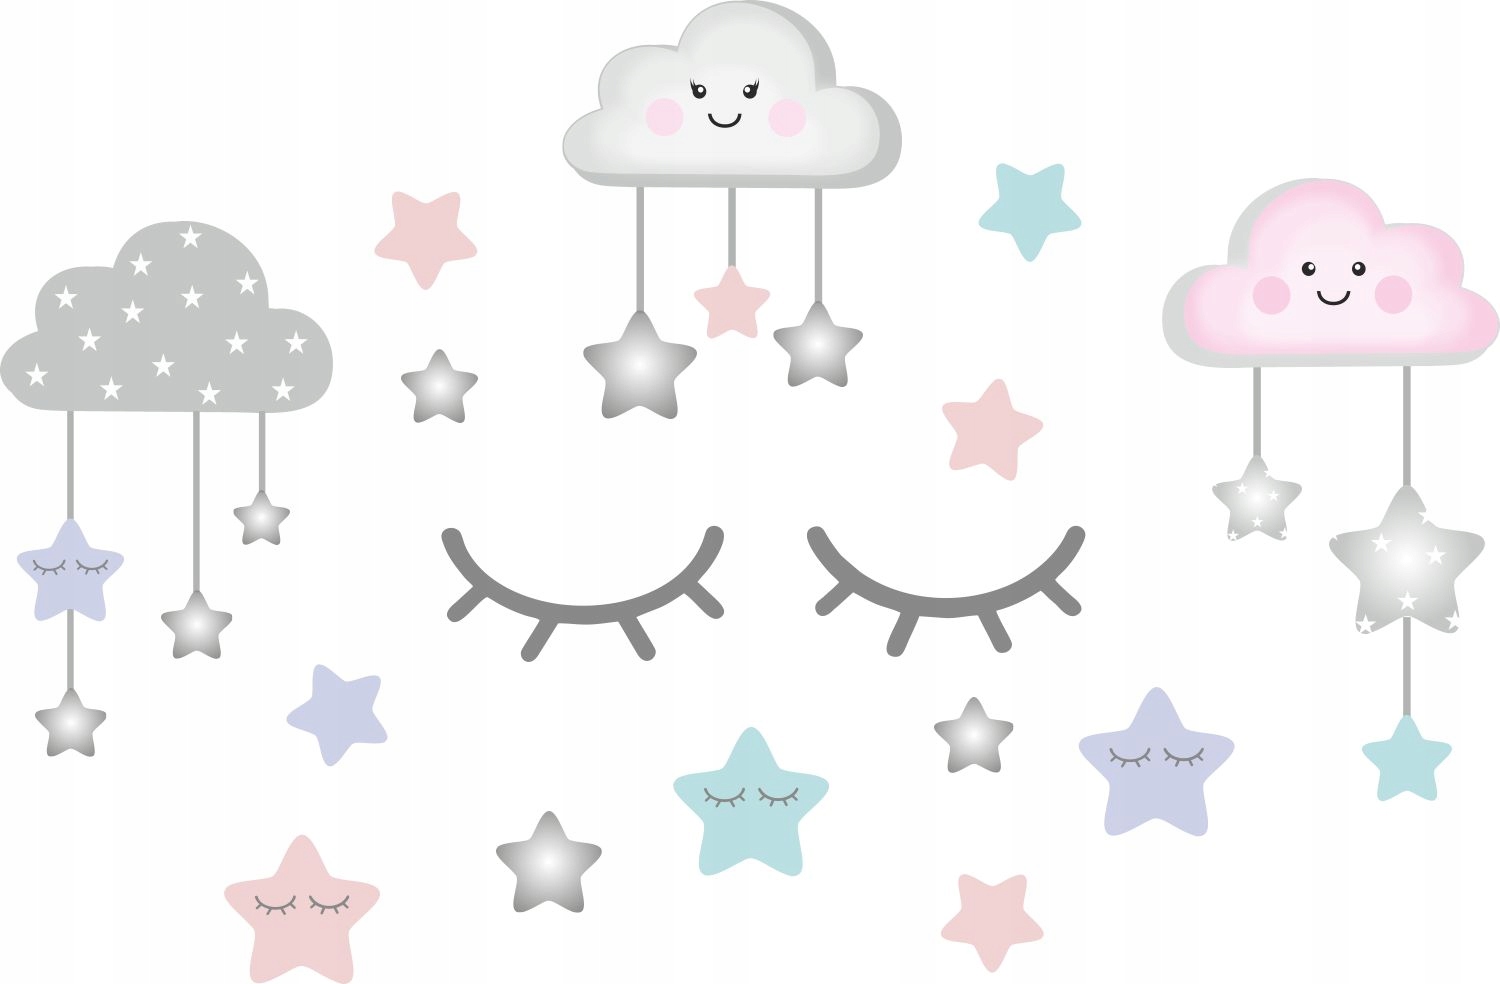 Stars 170. Звездочки и облачка. Звездочки в облаках. Облачко со звездами. Звездочки на облачке для детей.